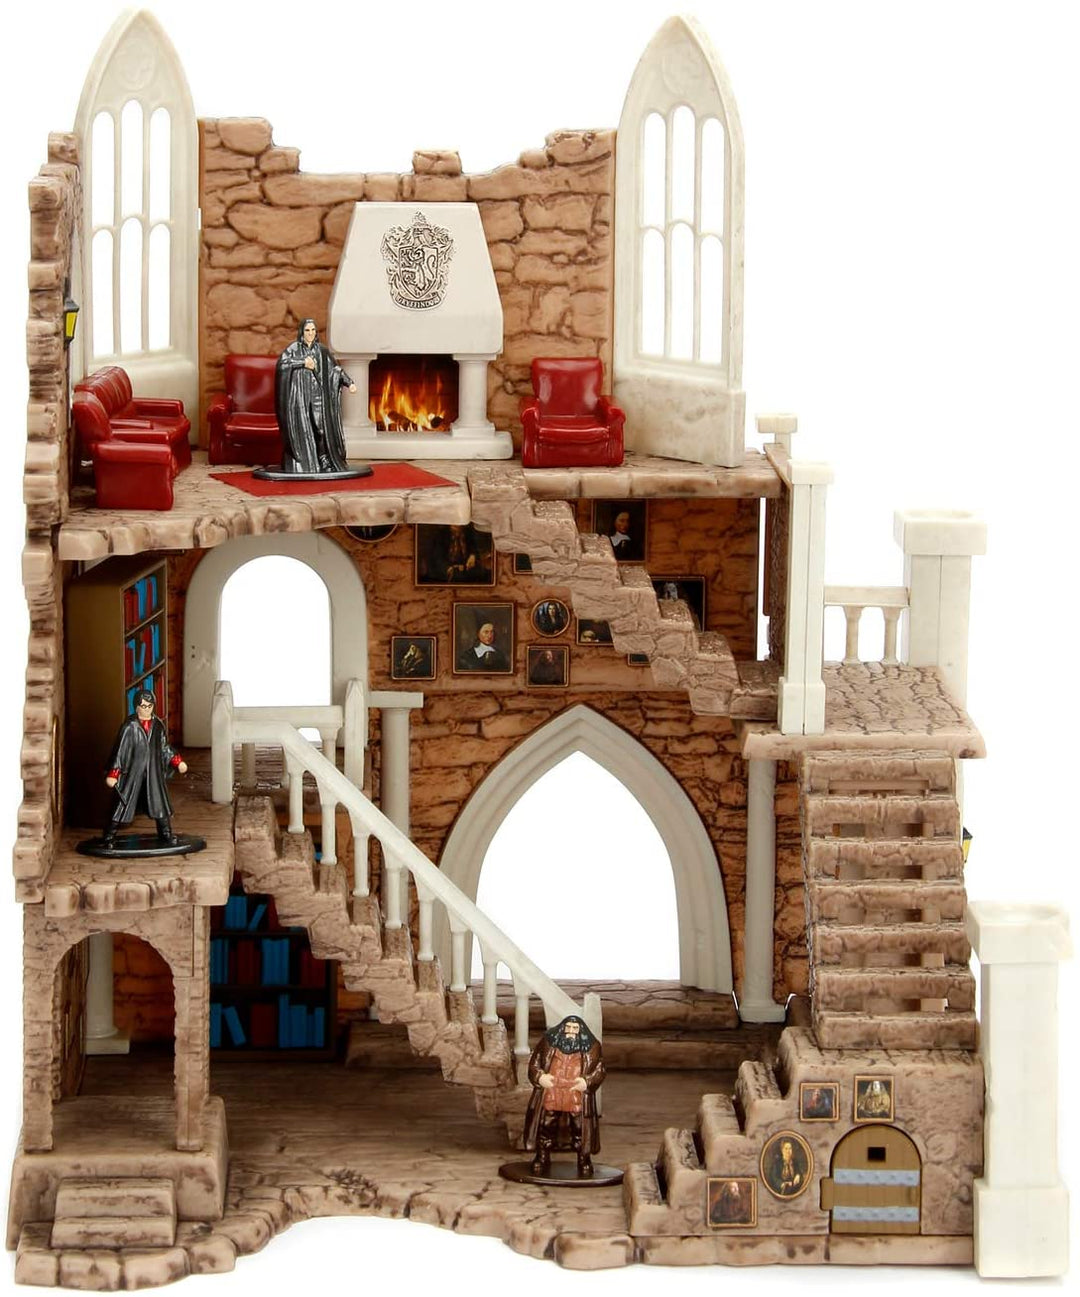 Jada – Harry Potter – 253185001 – Gryffindor-Turm-Spielset + 2 Metallfiguren, 4 cm